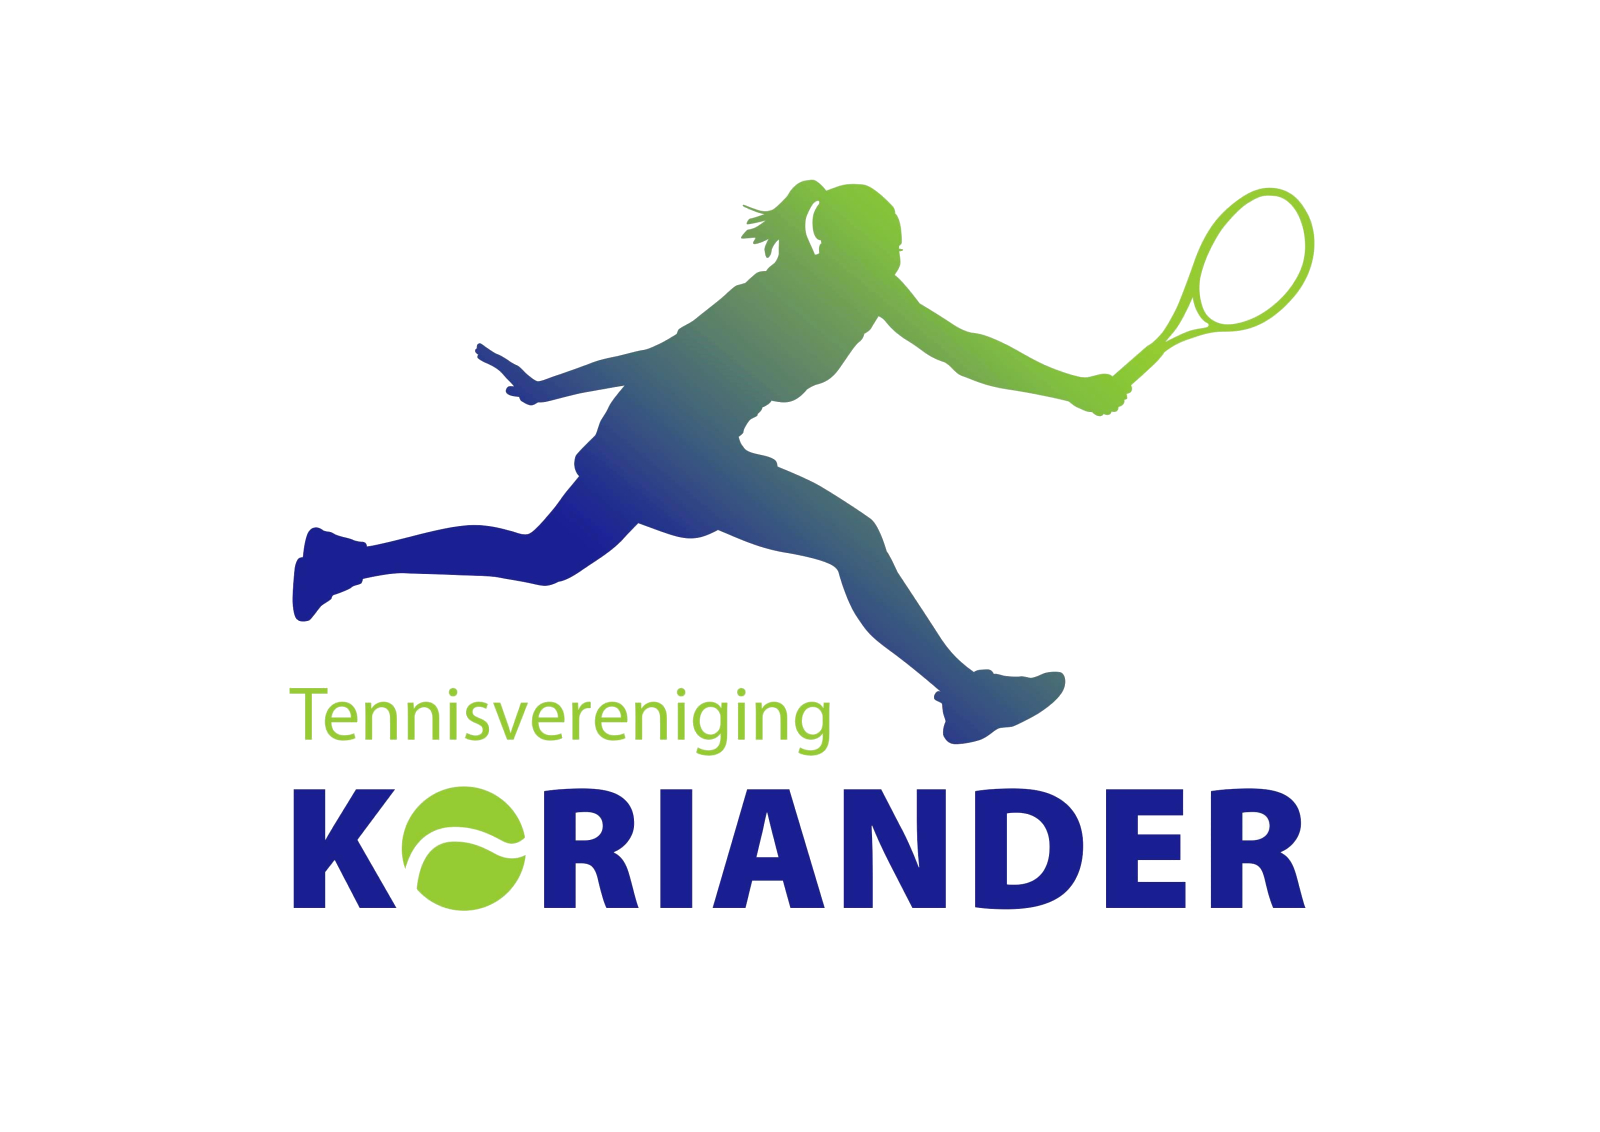 T.V. Koriander